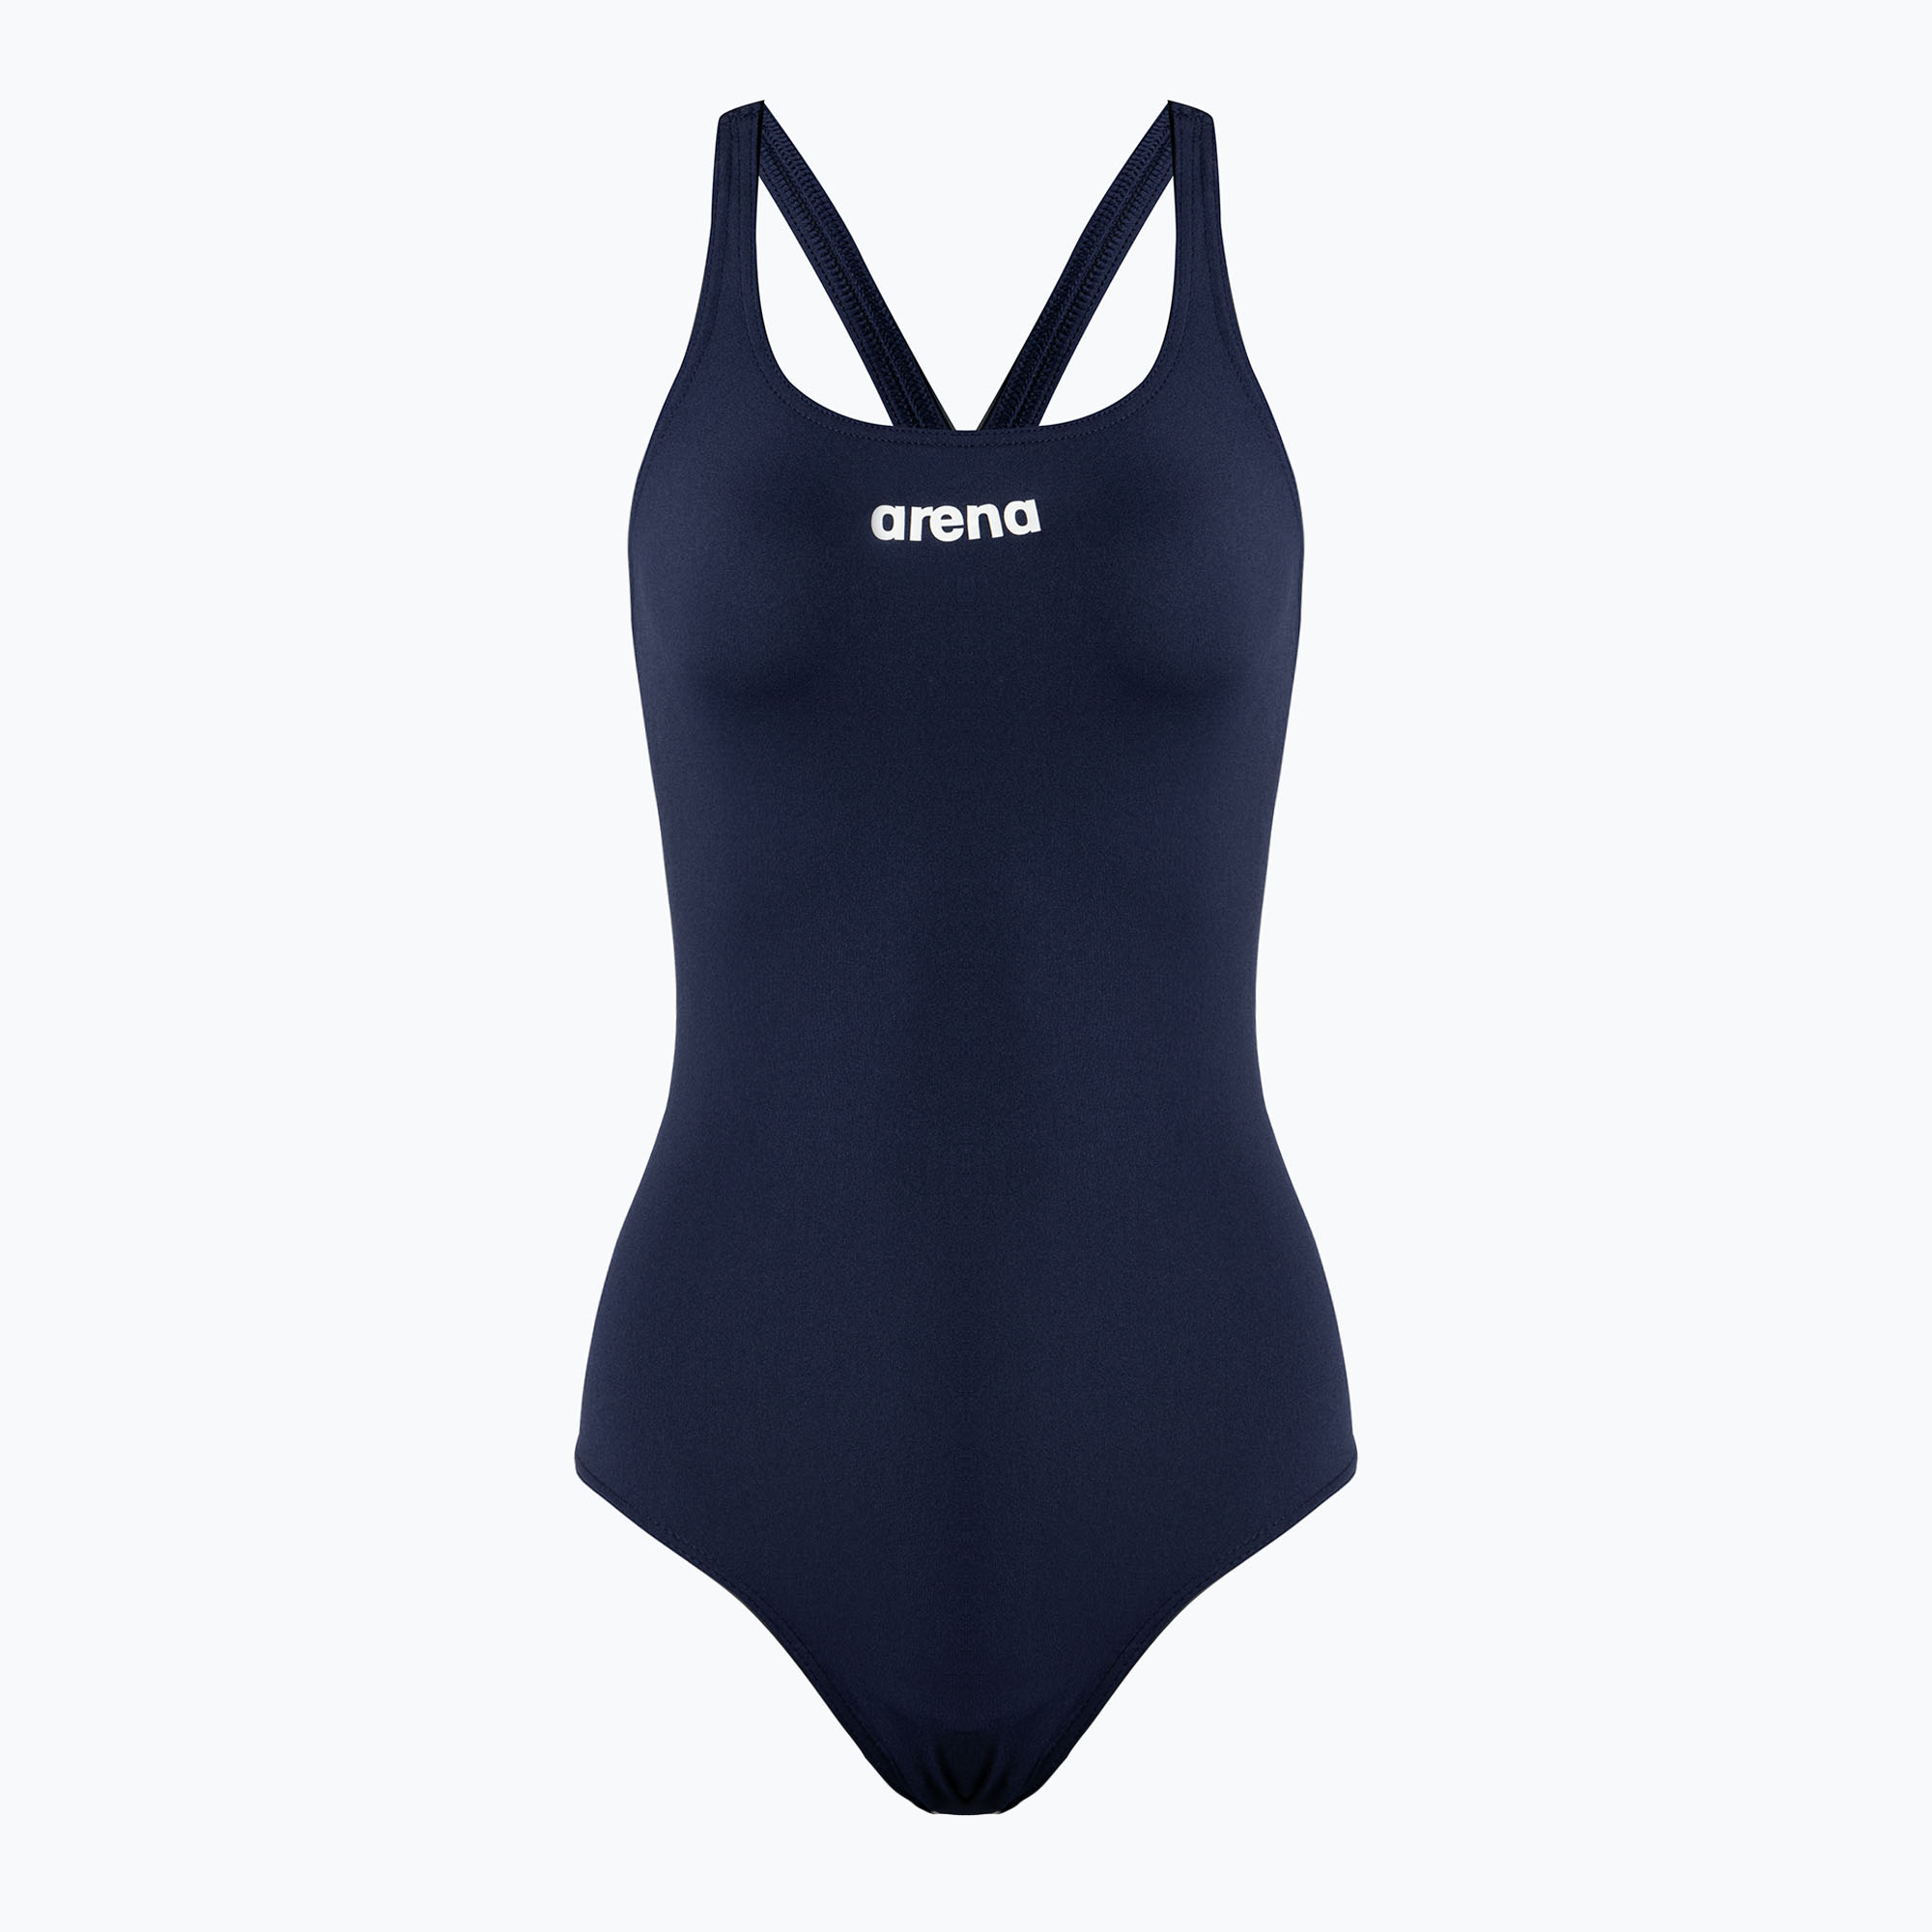 Дамски бански костюм от една част arena Team Swim Pro Solid navy blue 004760/750